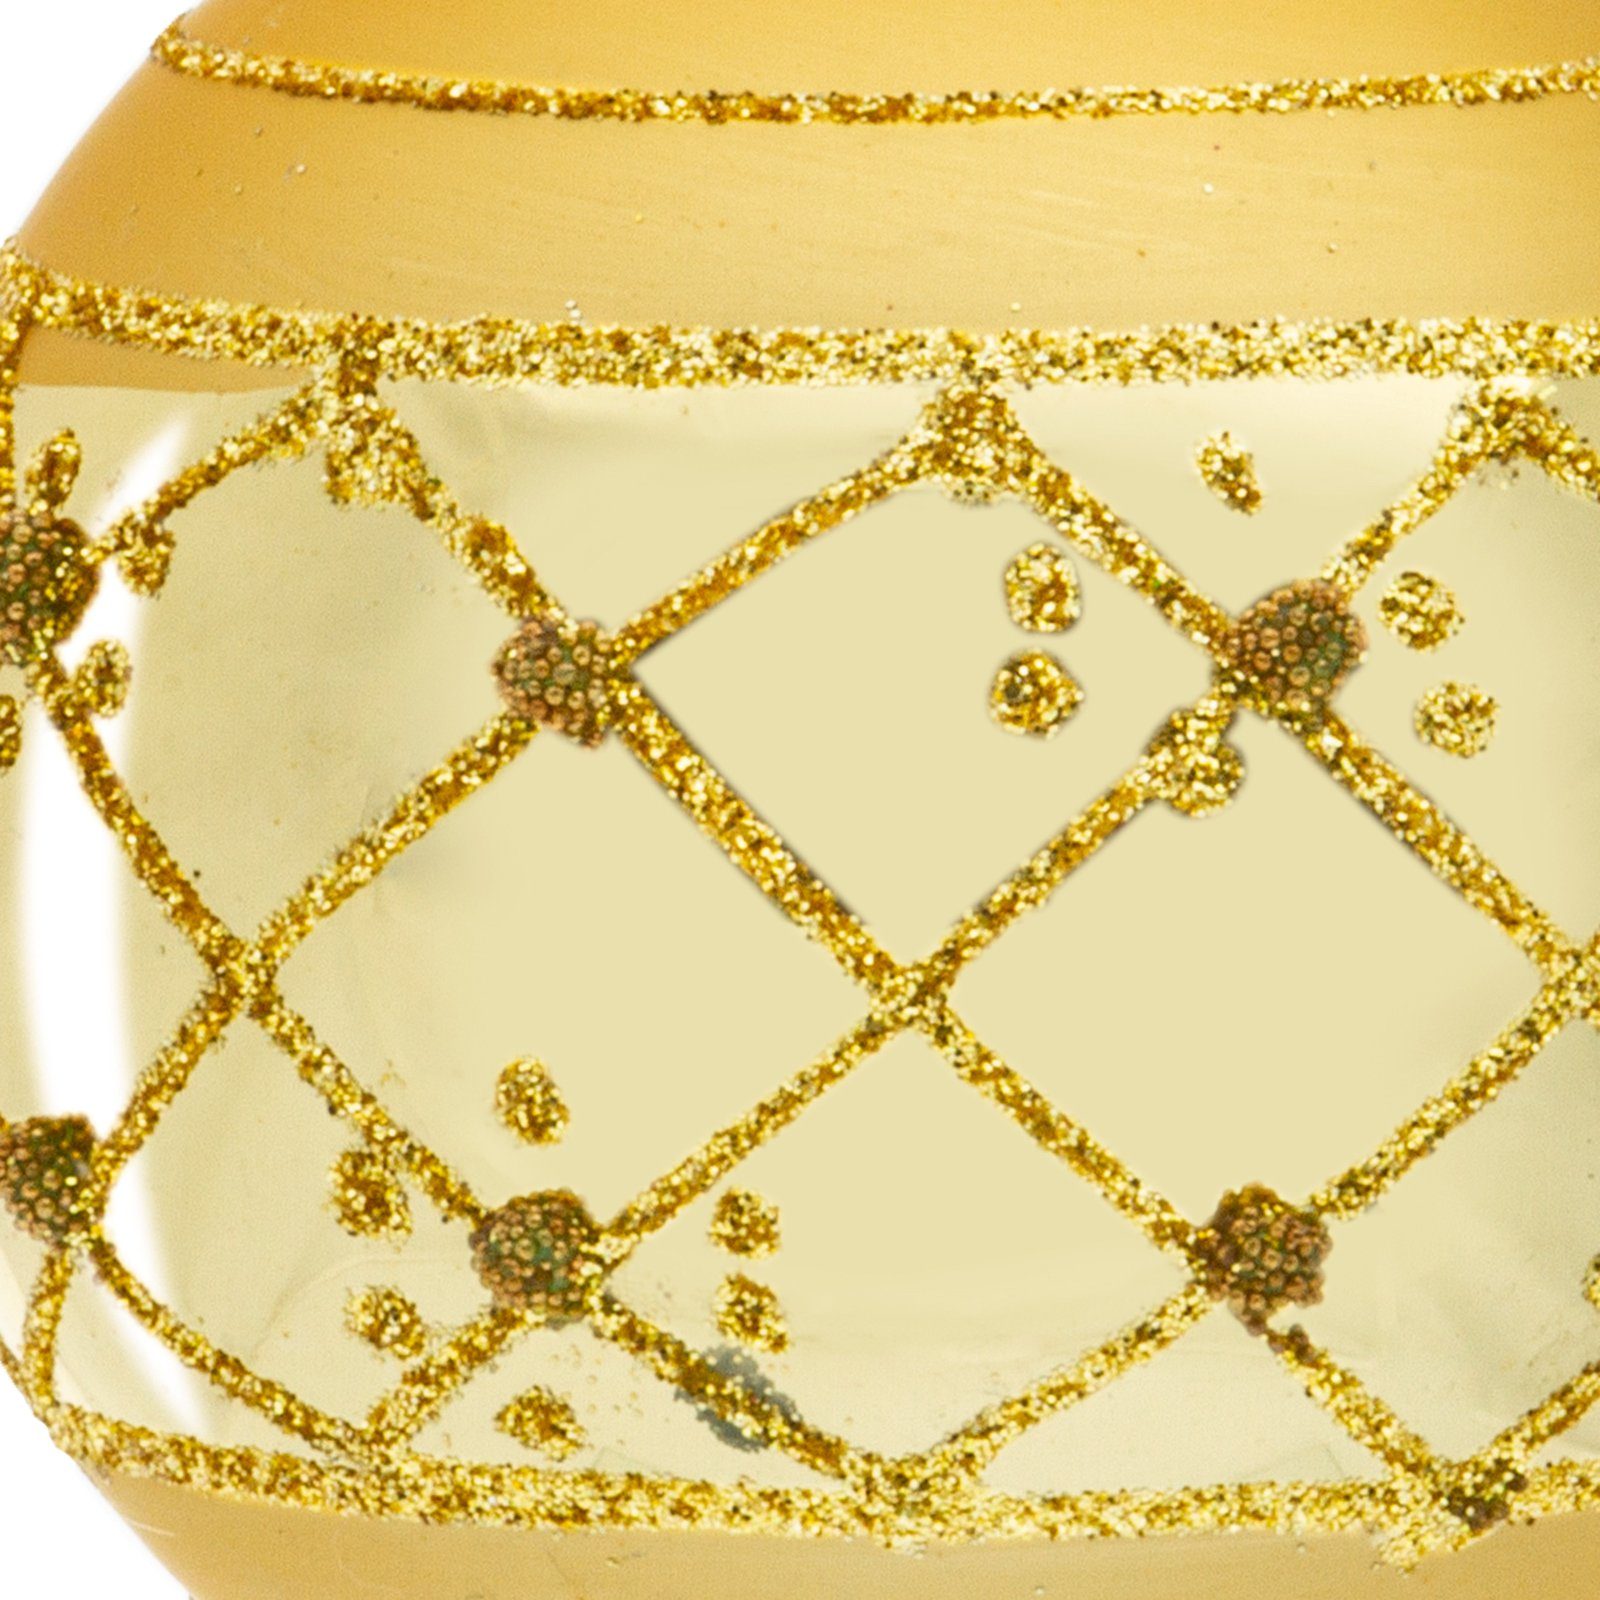 Verzierung Gold Wien mit Highlights 4er Set Christbaumkugeln aus Glas gold Christbaumschmuck Modell SIKORA